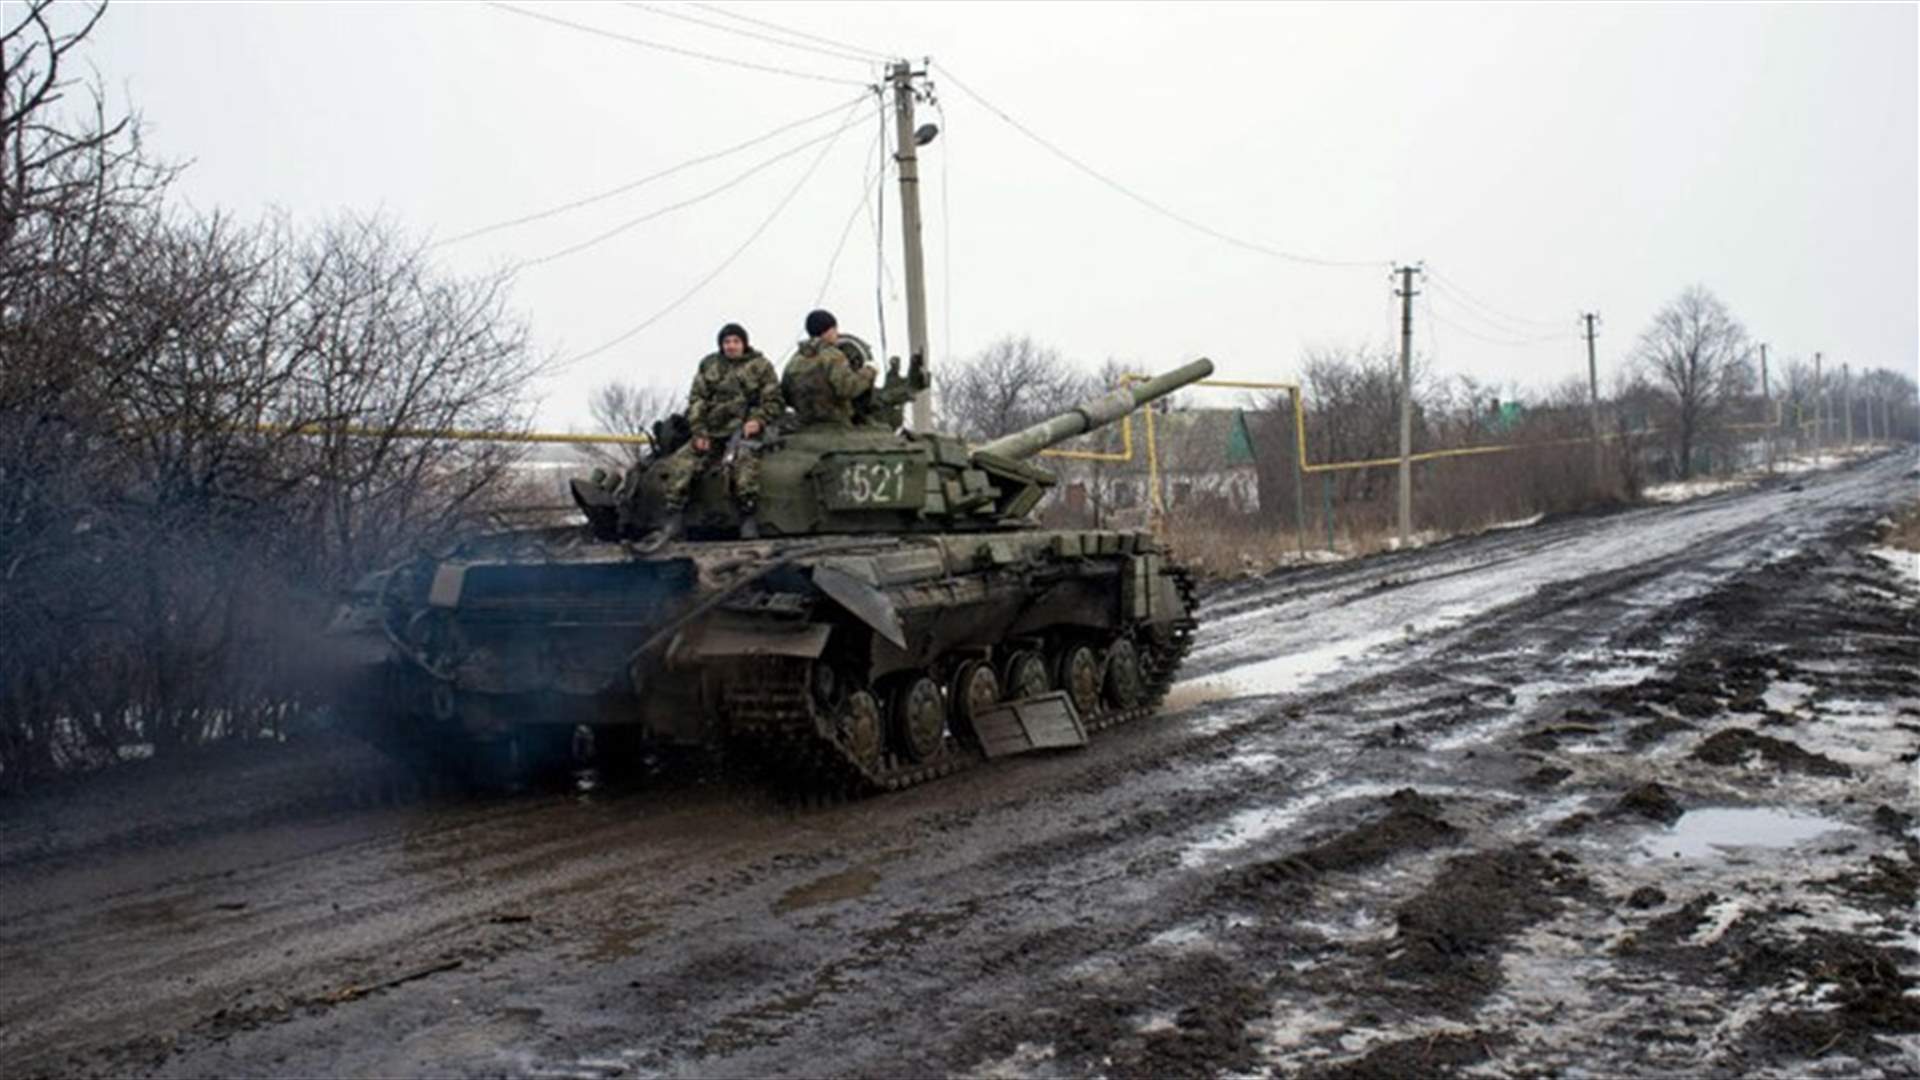 ستة قتلى في قصف روسي على توريتسك في شرق أوكرانيا بحسب السلطات الأوكرانية